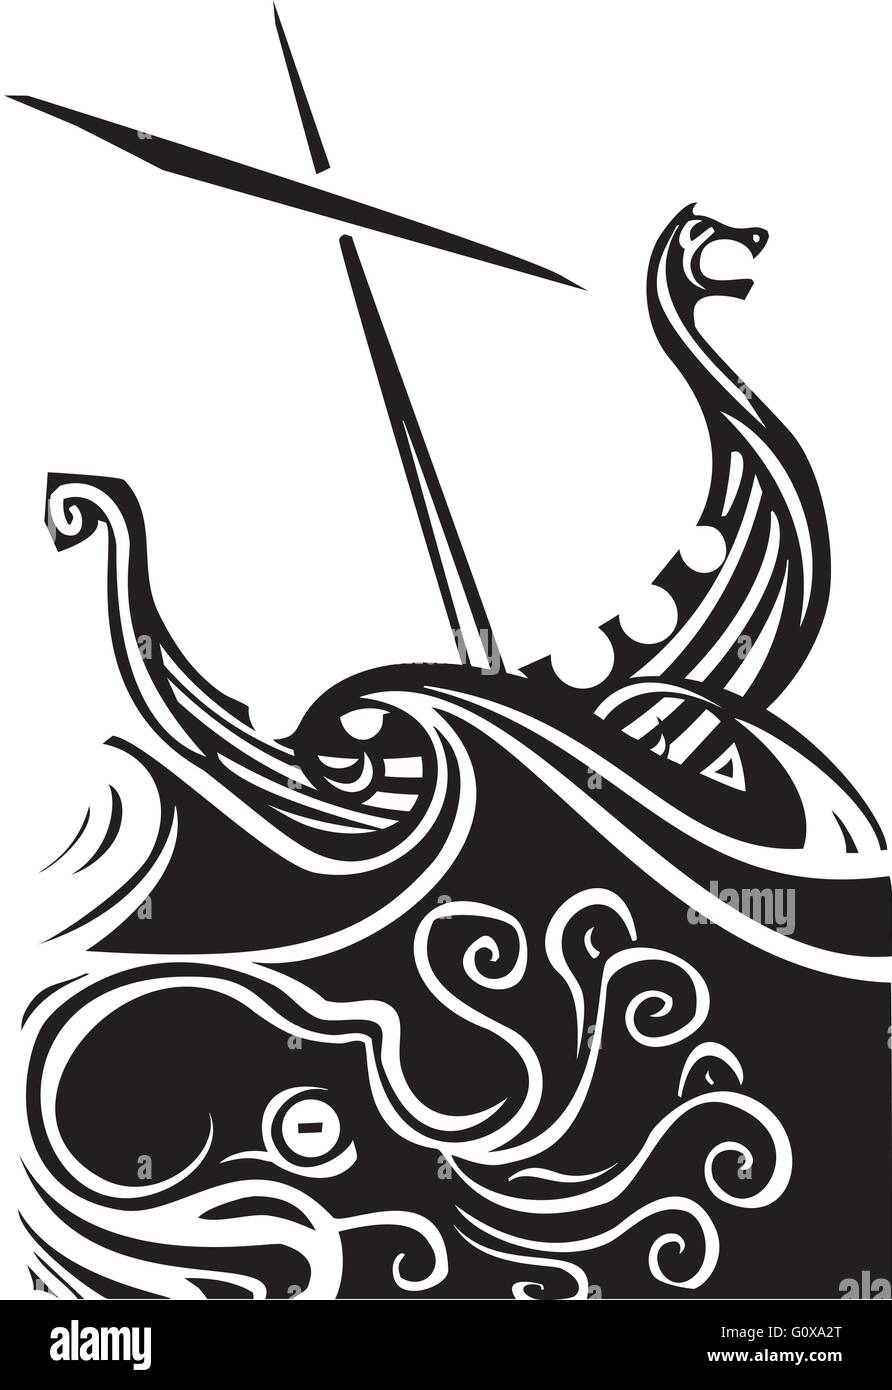 Image style gravure sur bois d'un drakkar viking navigation dans les vagues Illustration de Vecteur